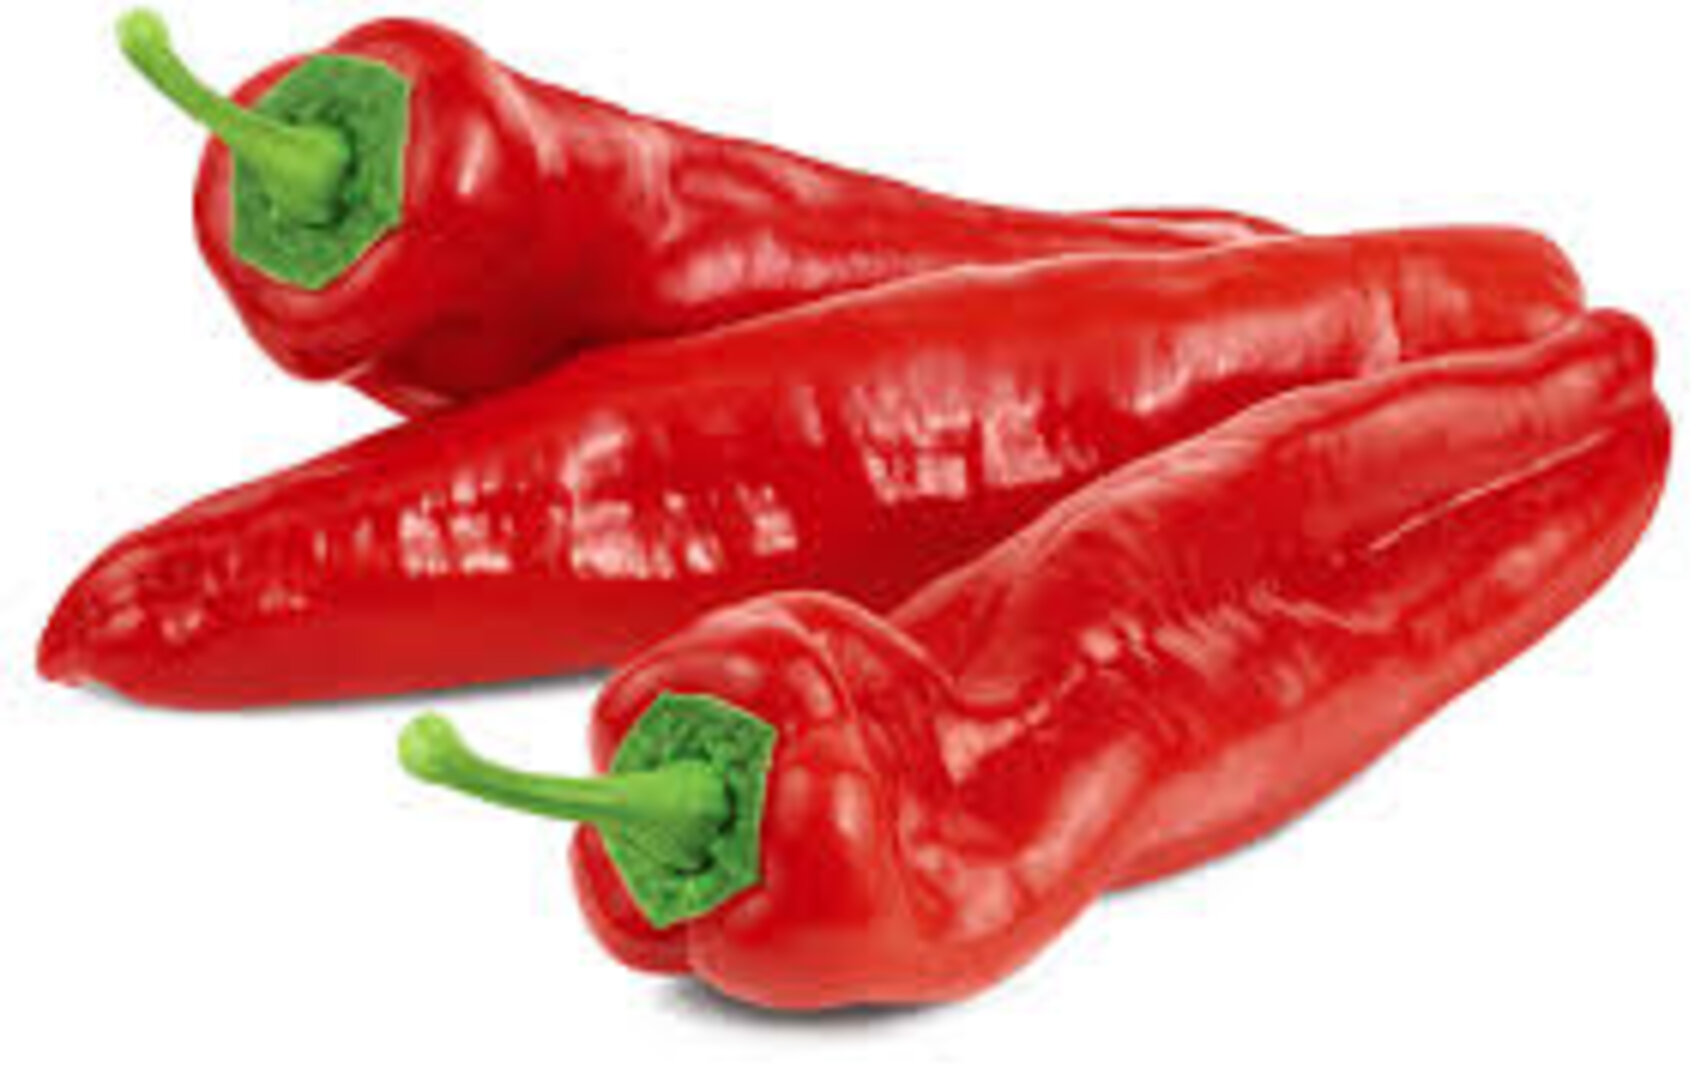  bell pepper red 1kg